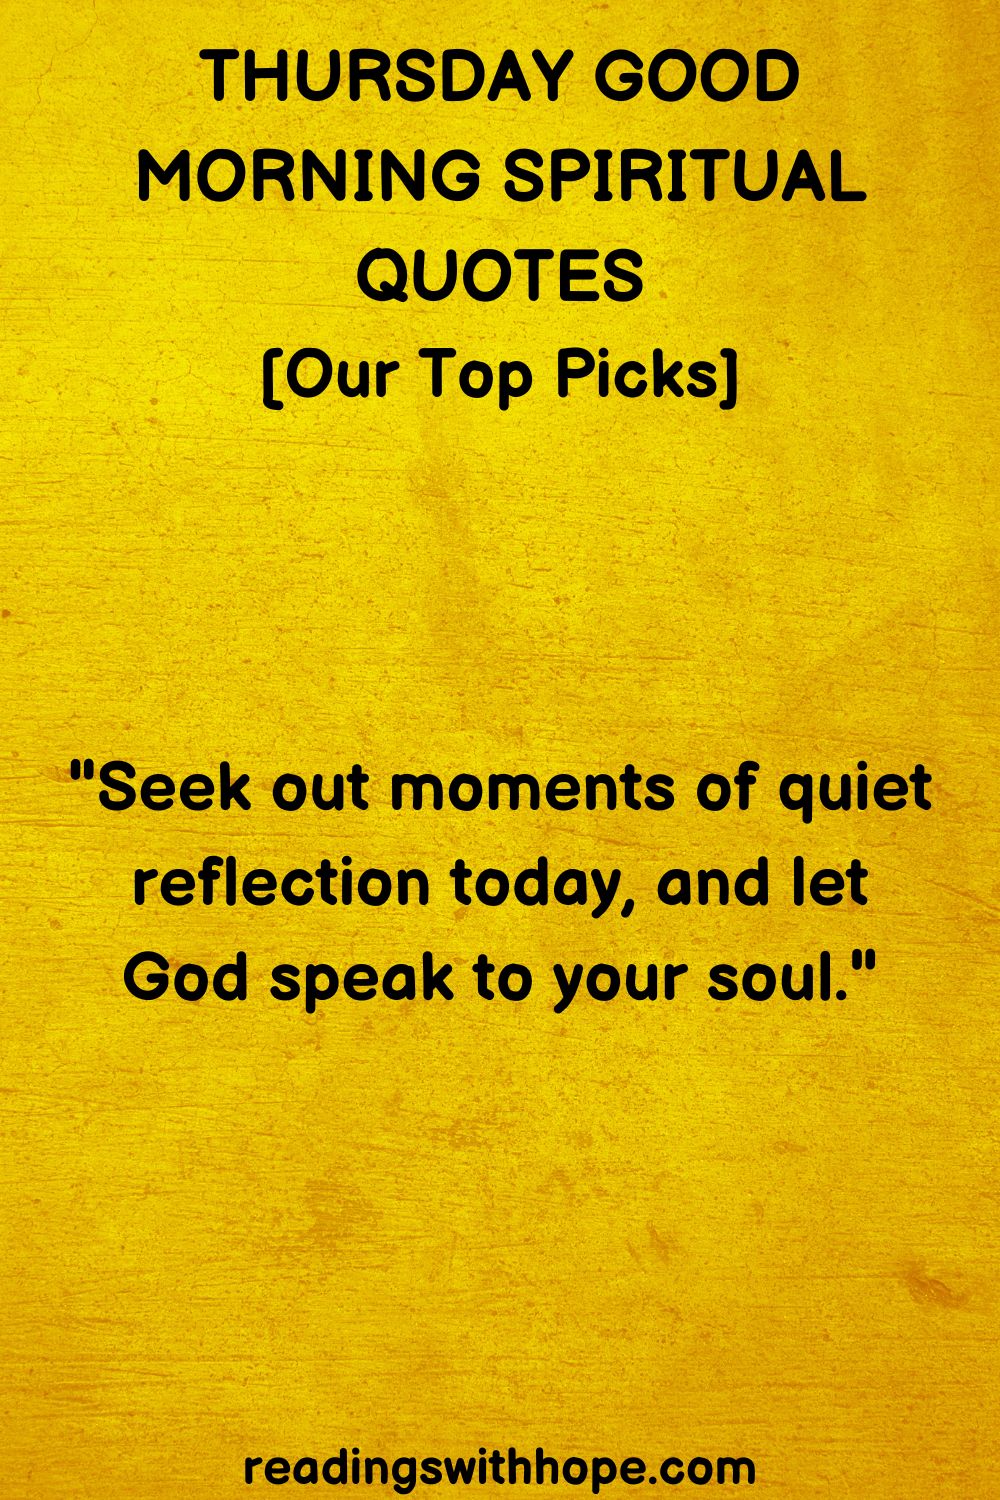 Thursday Good Morning Spiritual Quotes